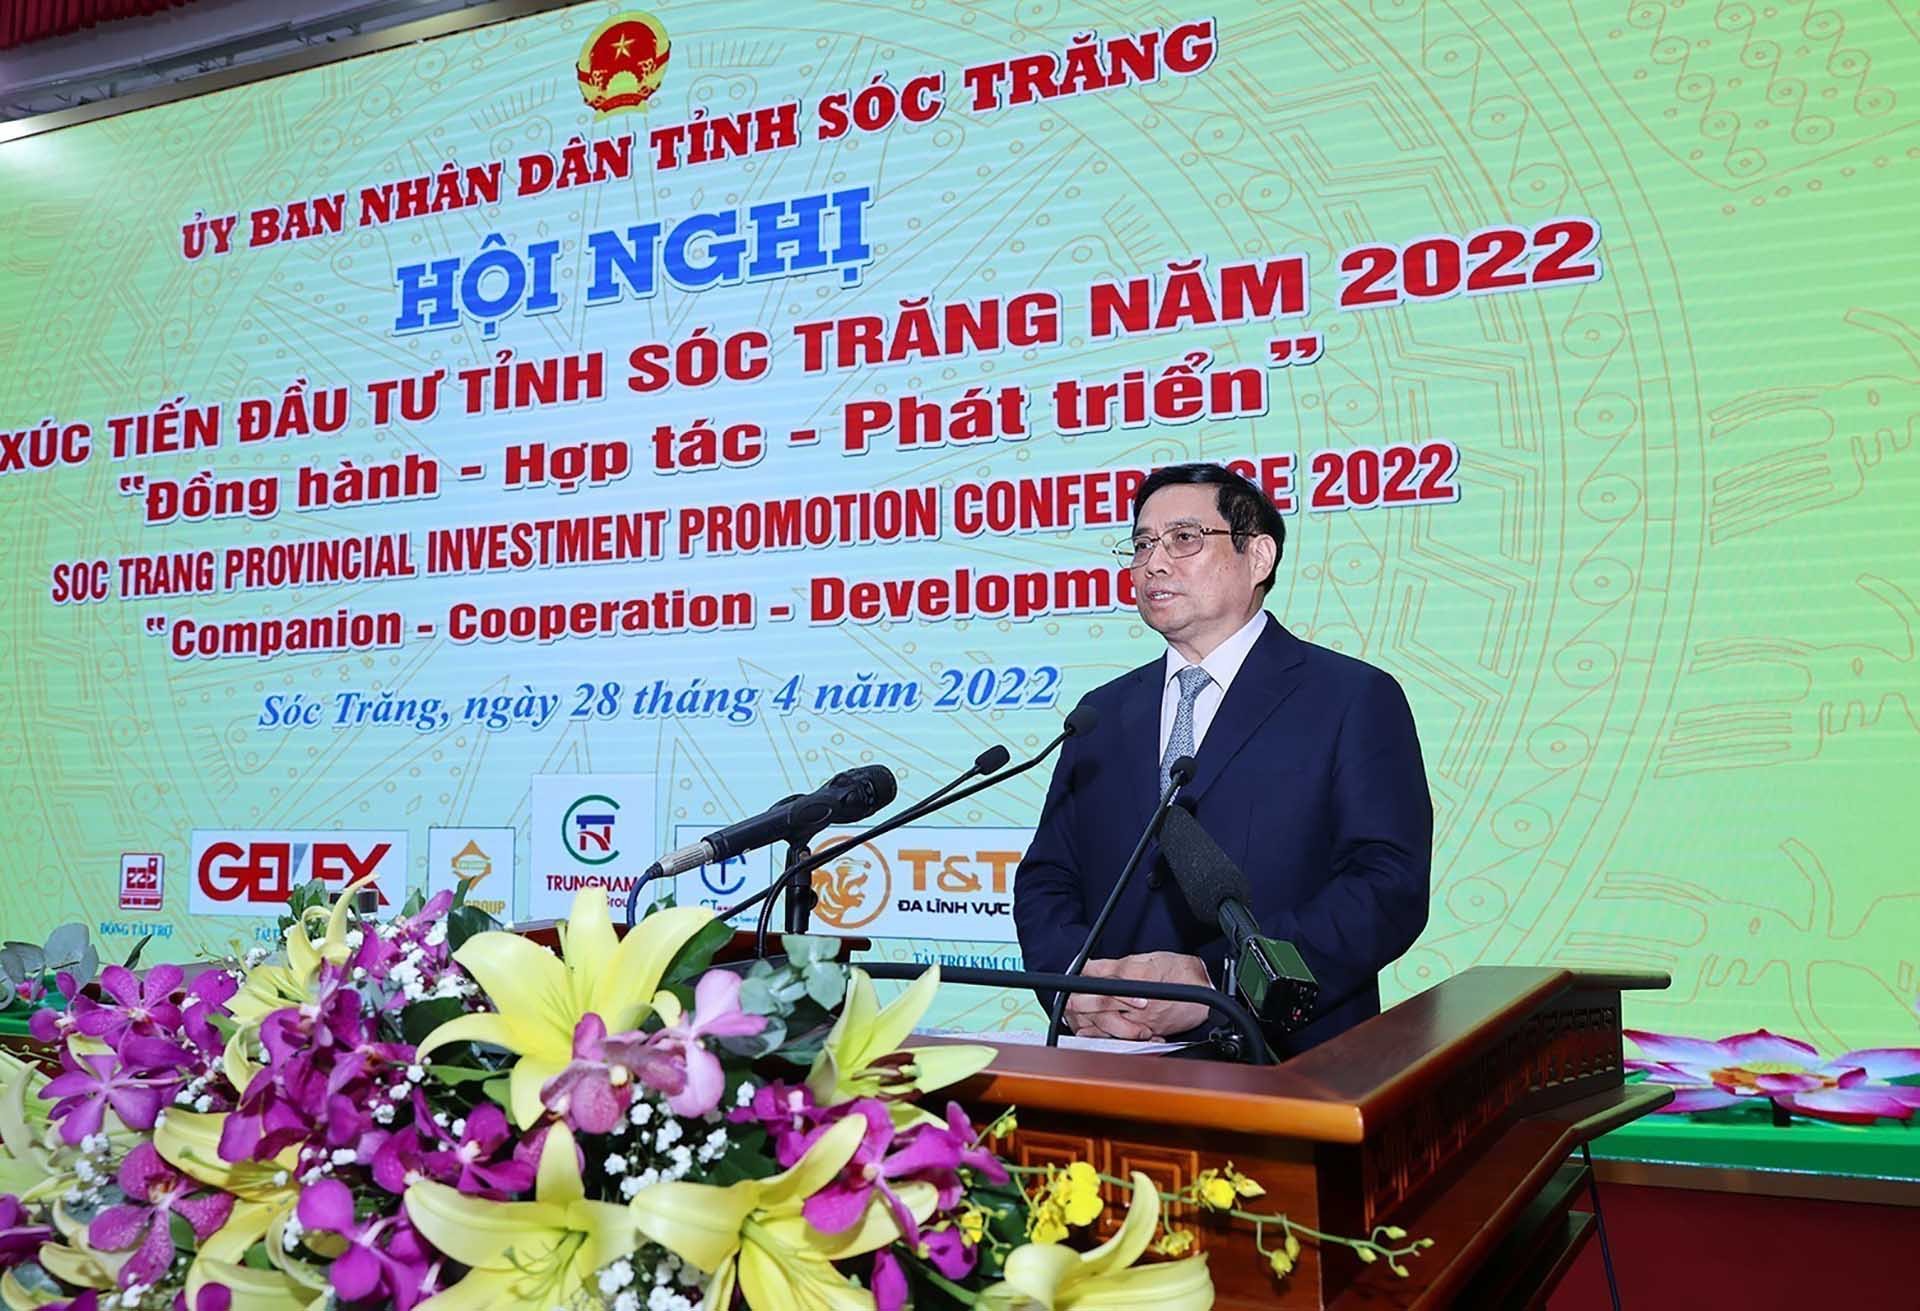 Thủ tướng Phạm Minh Chính phát biểu tại Hội nghị xúc tiến đầu tư tỉnh Sóc Trăng năm 2022. (Nguồn: TTXVN)